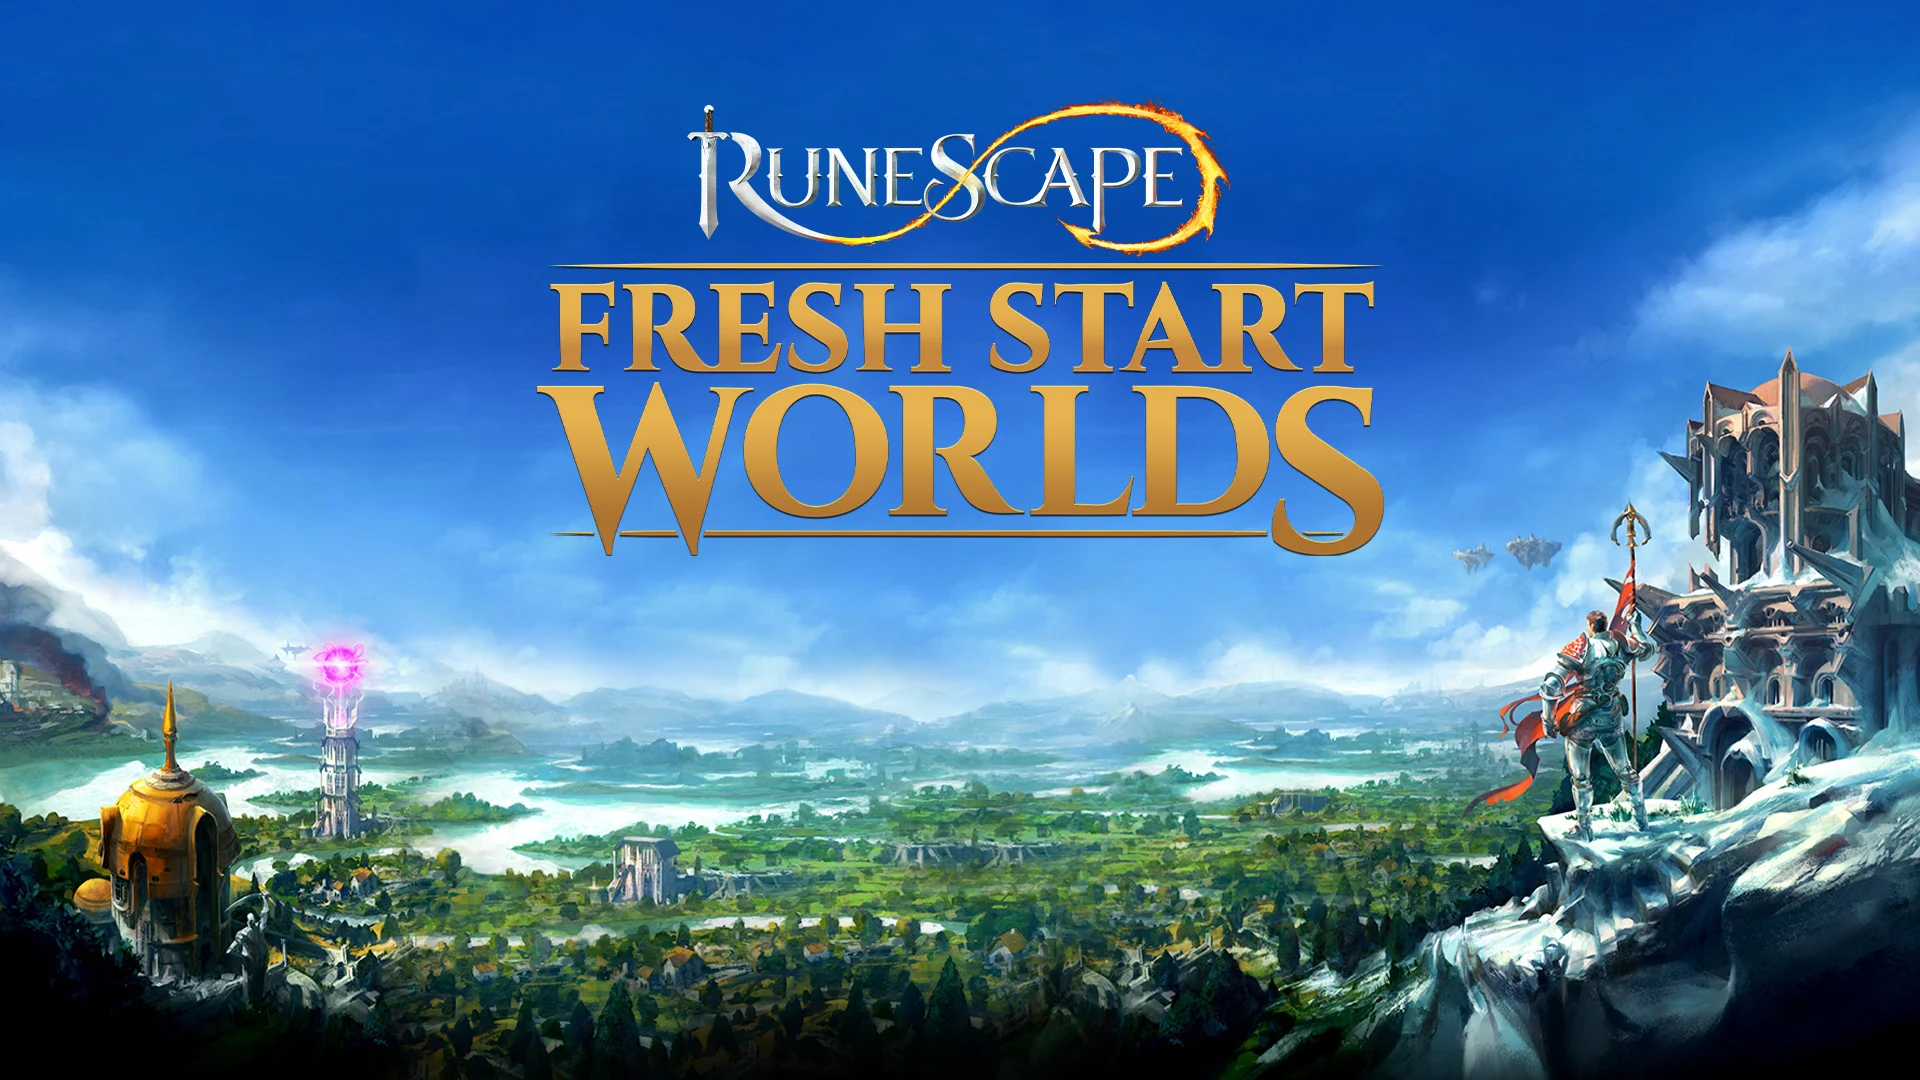 Fresh Start Worlds Begin Today in Runescape 12